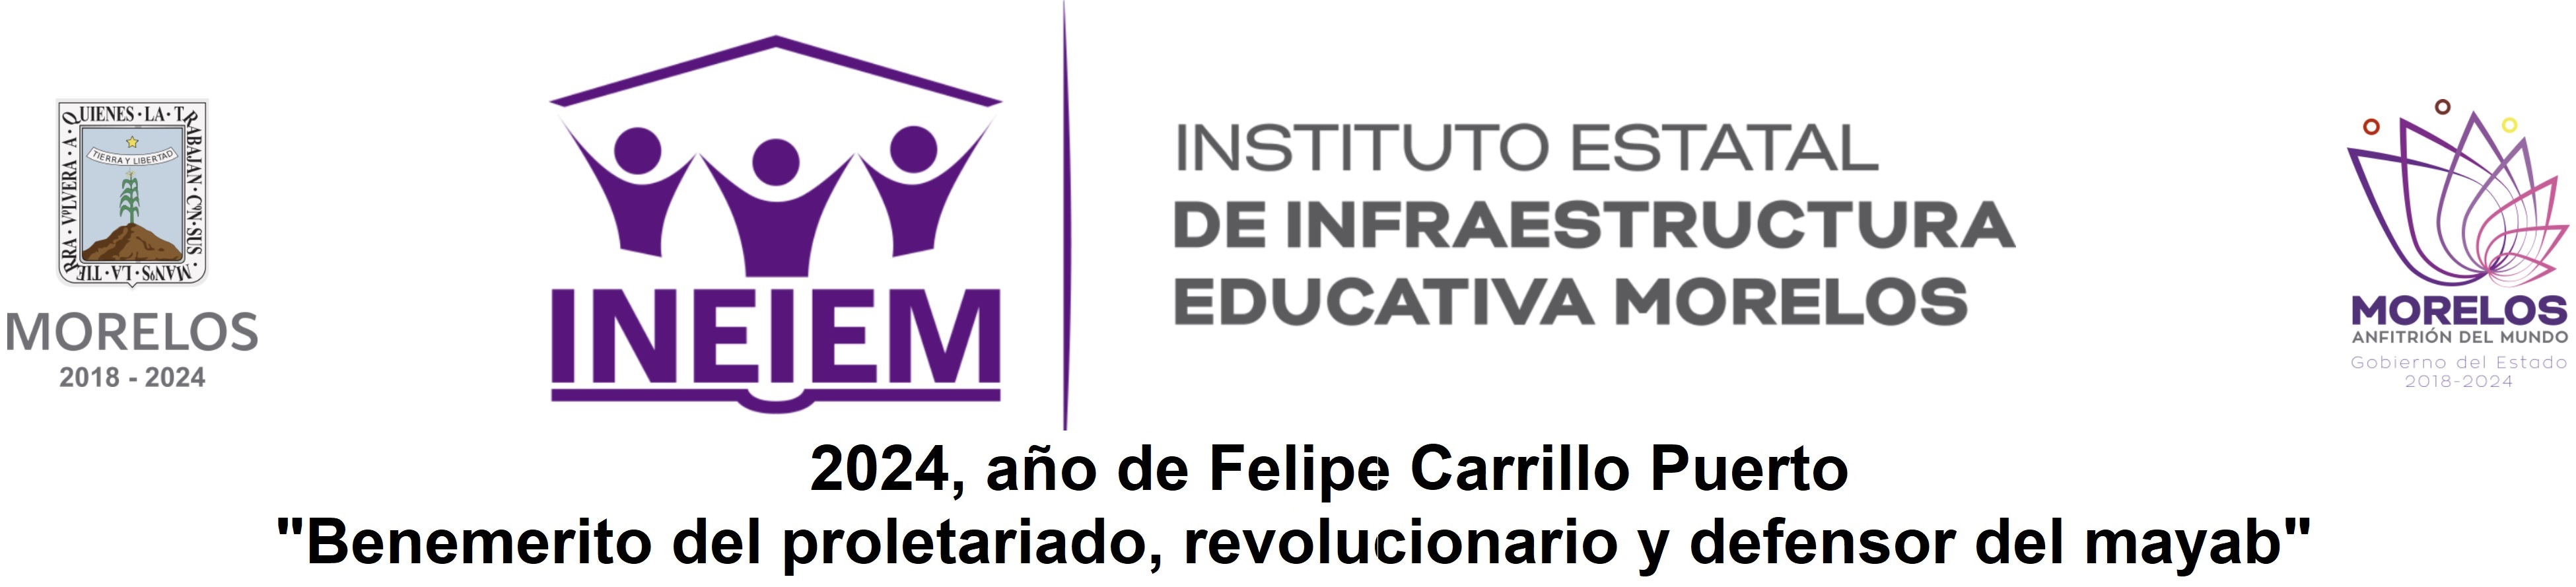 Instituto Estatal de Infraestructura Educativa Morelos (INEIEM)